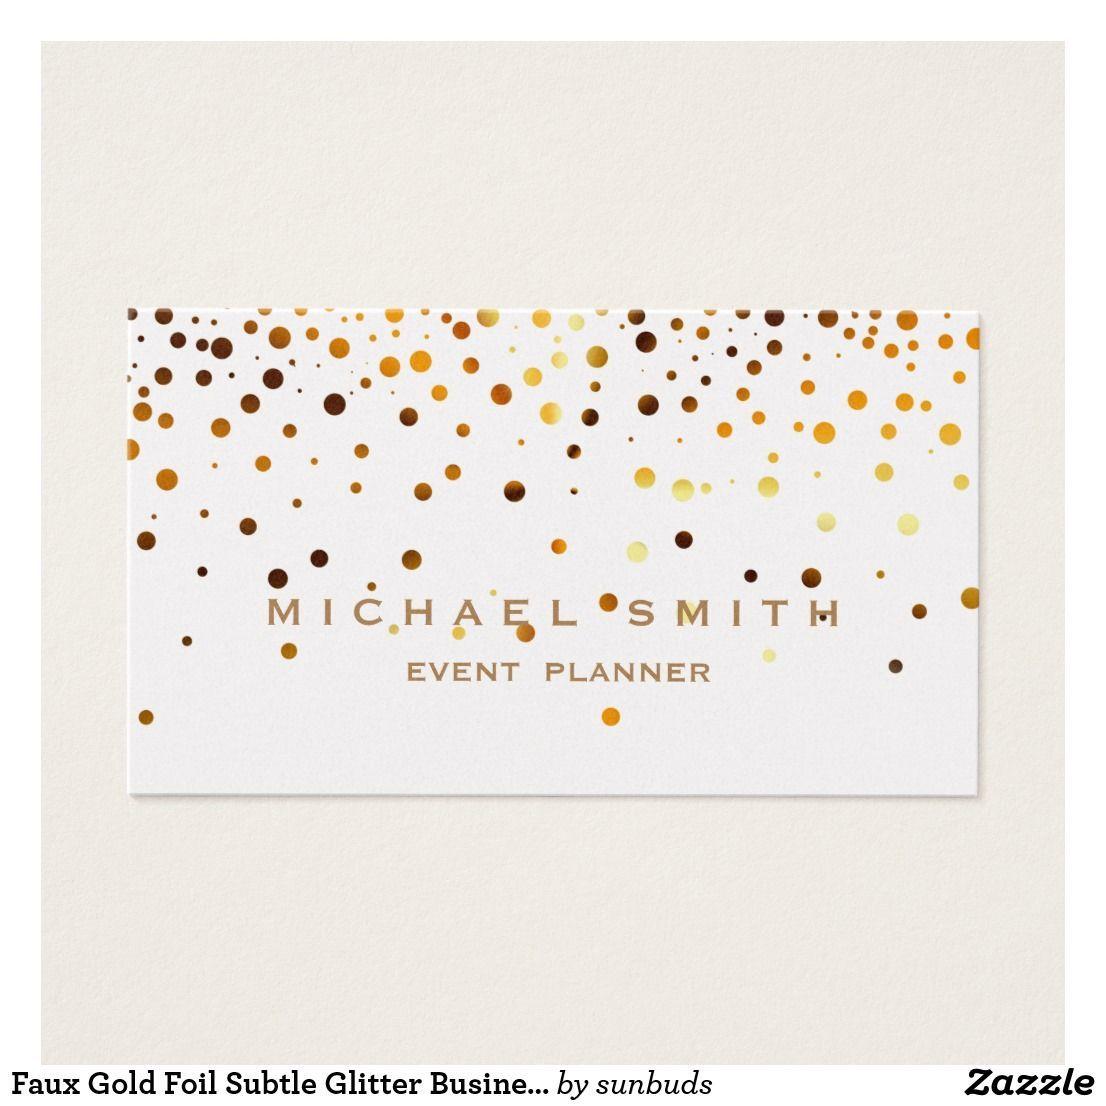 Subtle Glitter Logo - Faux Gold Foil Subtle Glitter Business Card. Zazzle Business cards